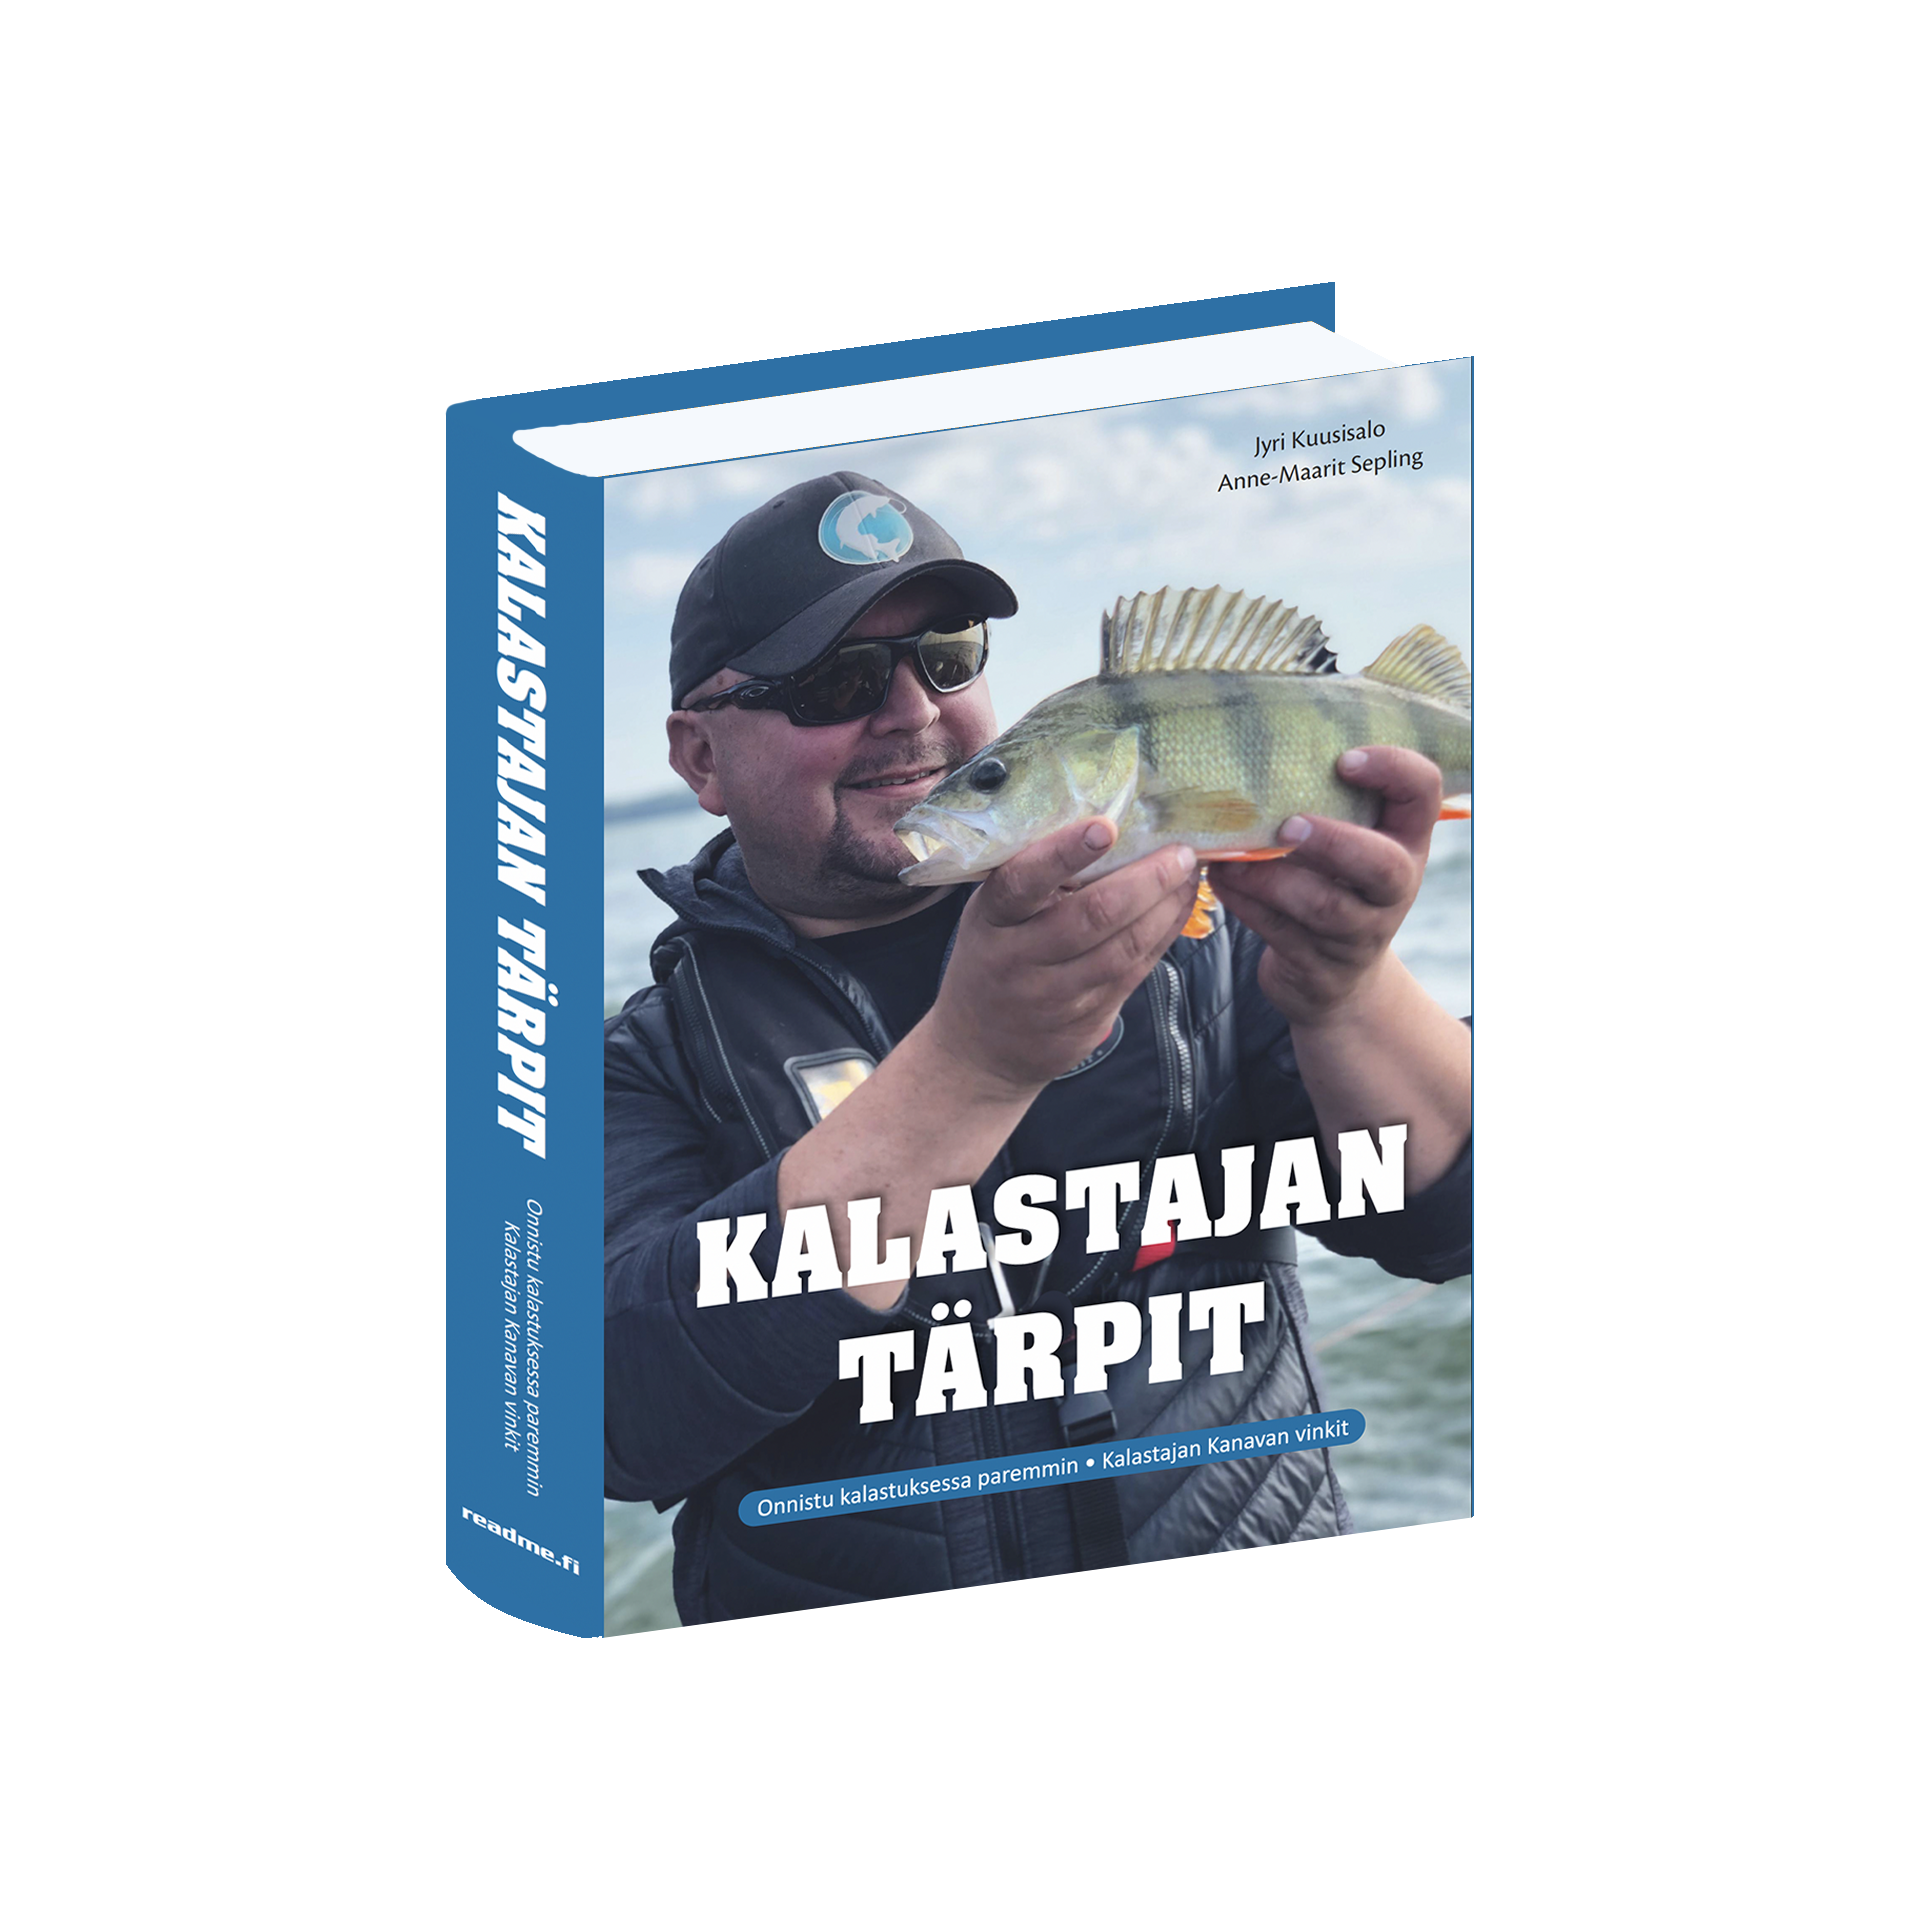 Kalastajan tärpit -kirjan julkaisutilaisuus